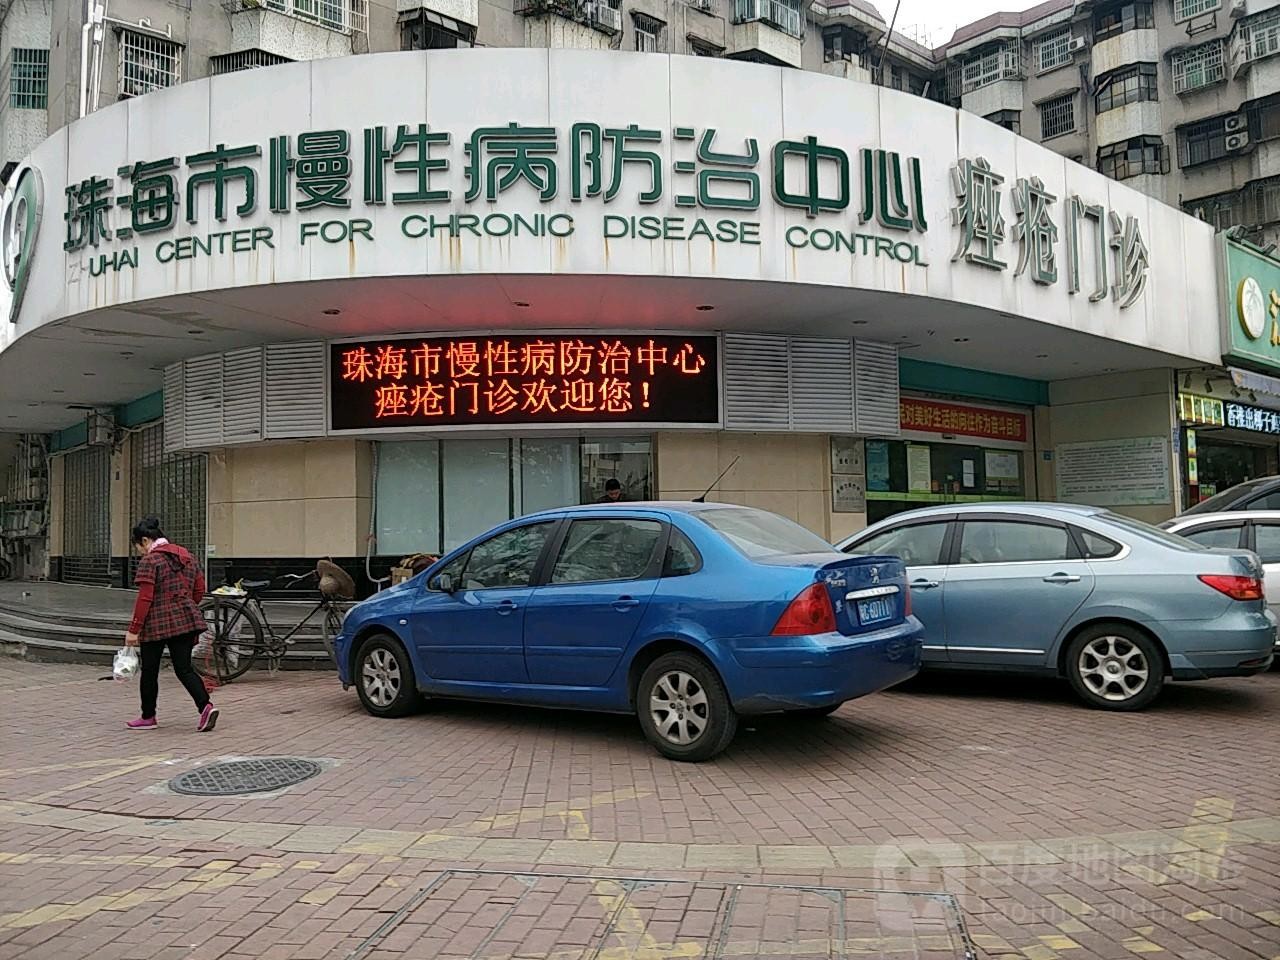 mais recente caso da empresa sobre O terceiro hospital de Zhuhai